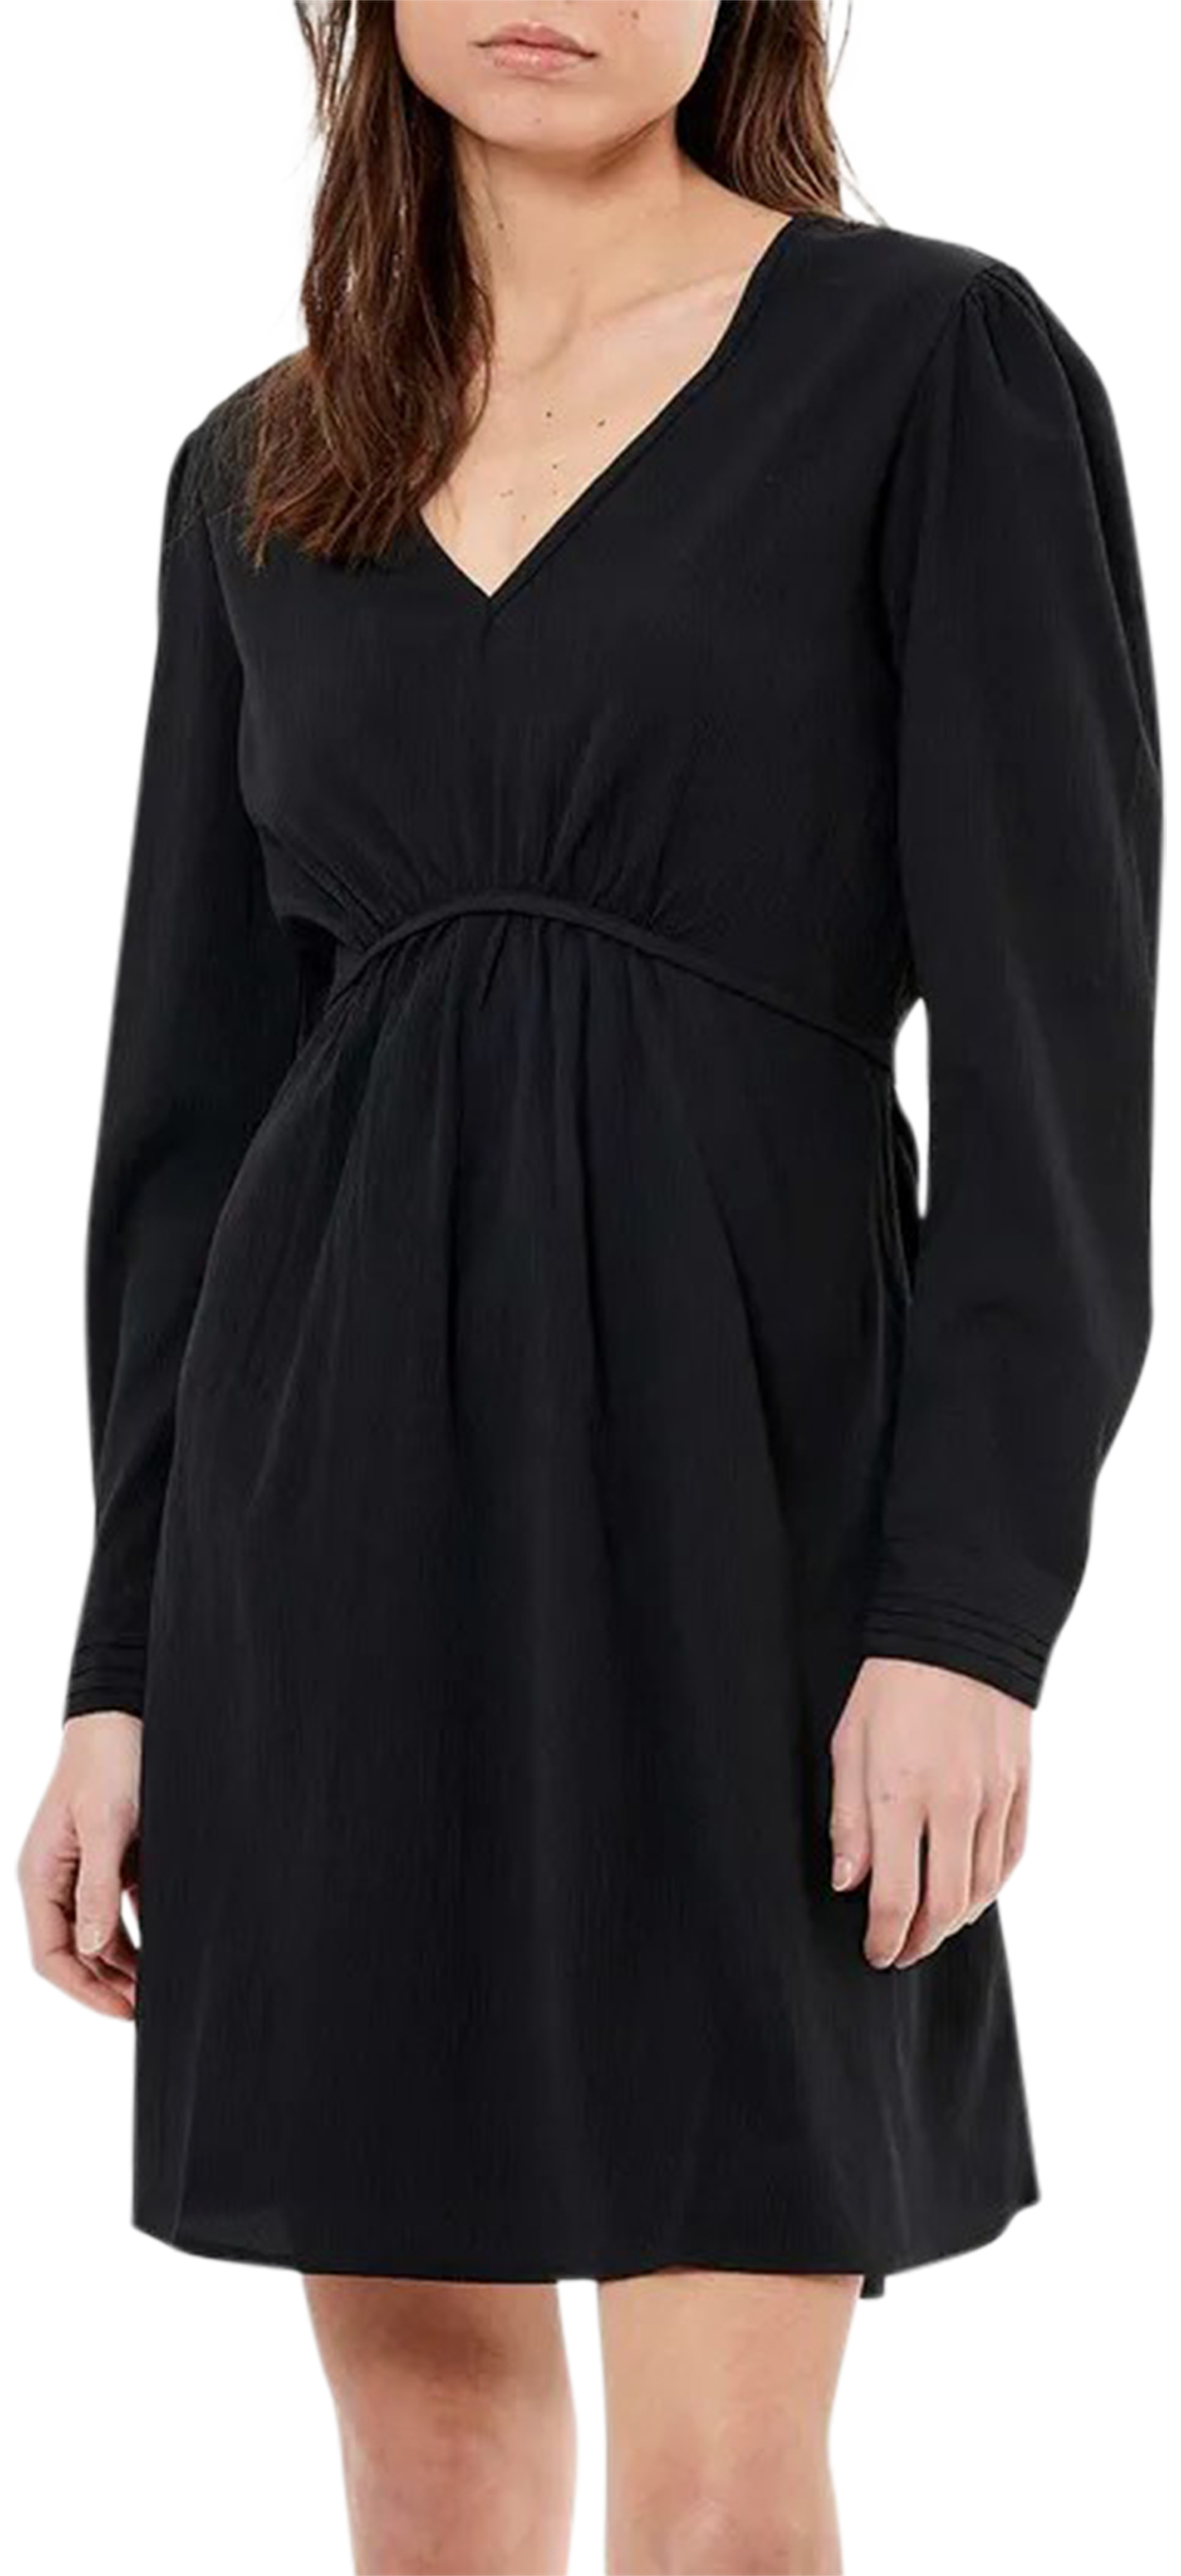 robe courte femme kaporal avec manches longues et col v noire